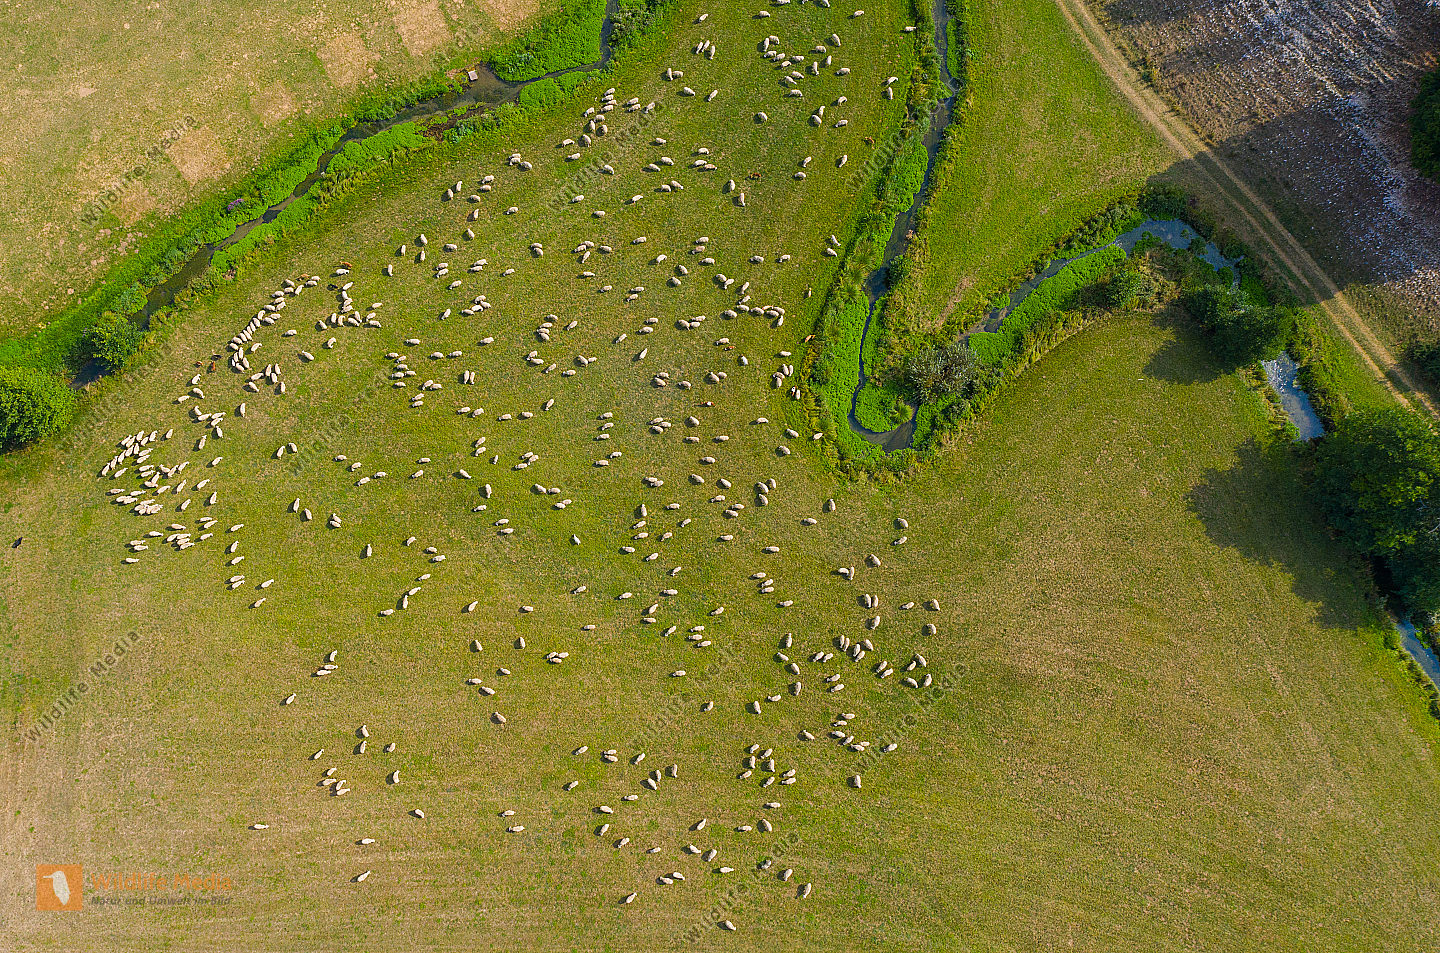 Schafherde Ovis aries im Tal der Laber. Luftaufnahme